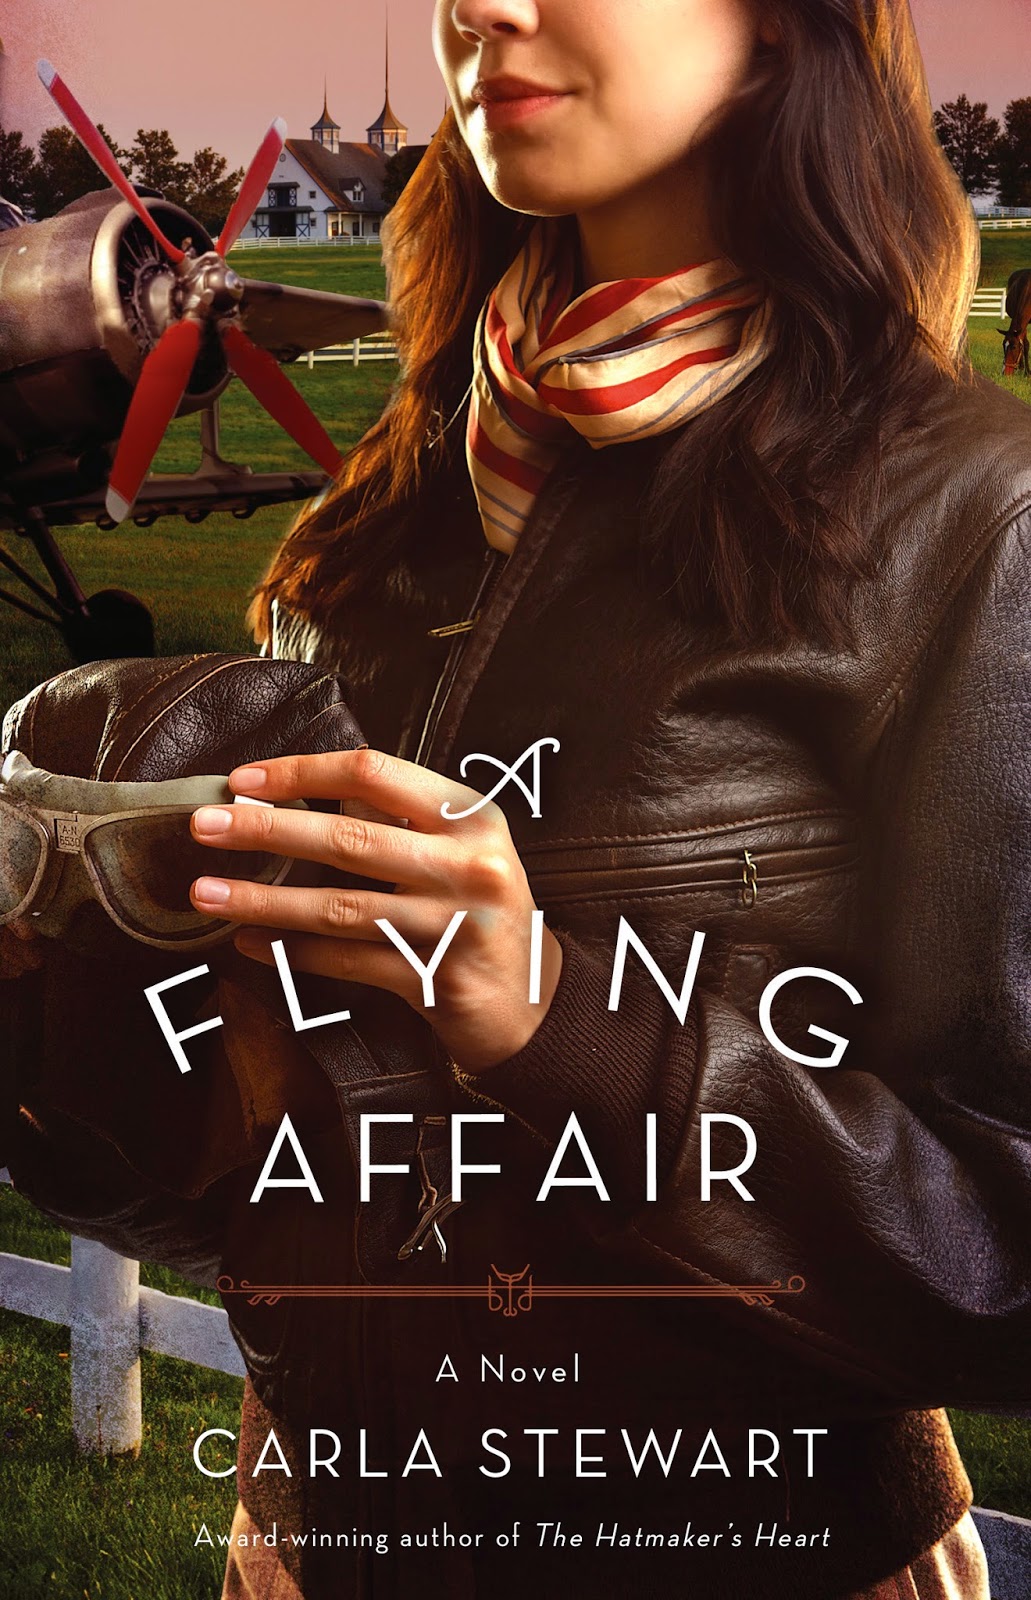 http://www.carlastewart.com/2015/02/18/flying-affair/